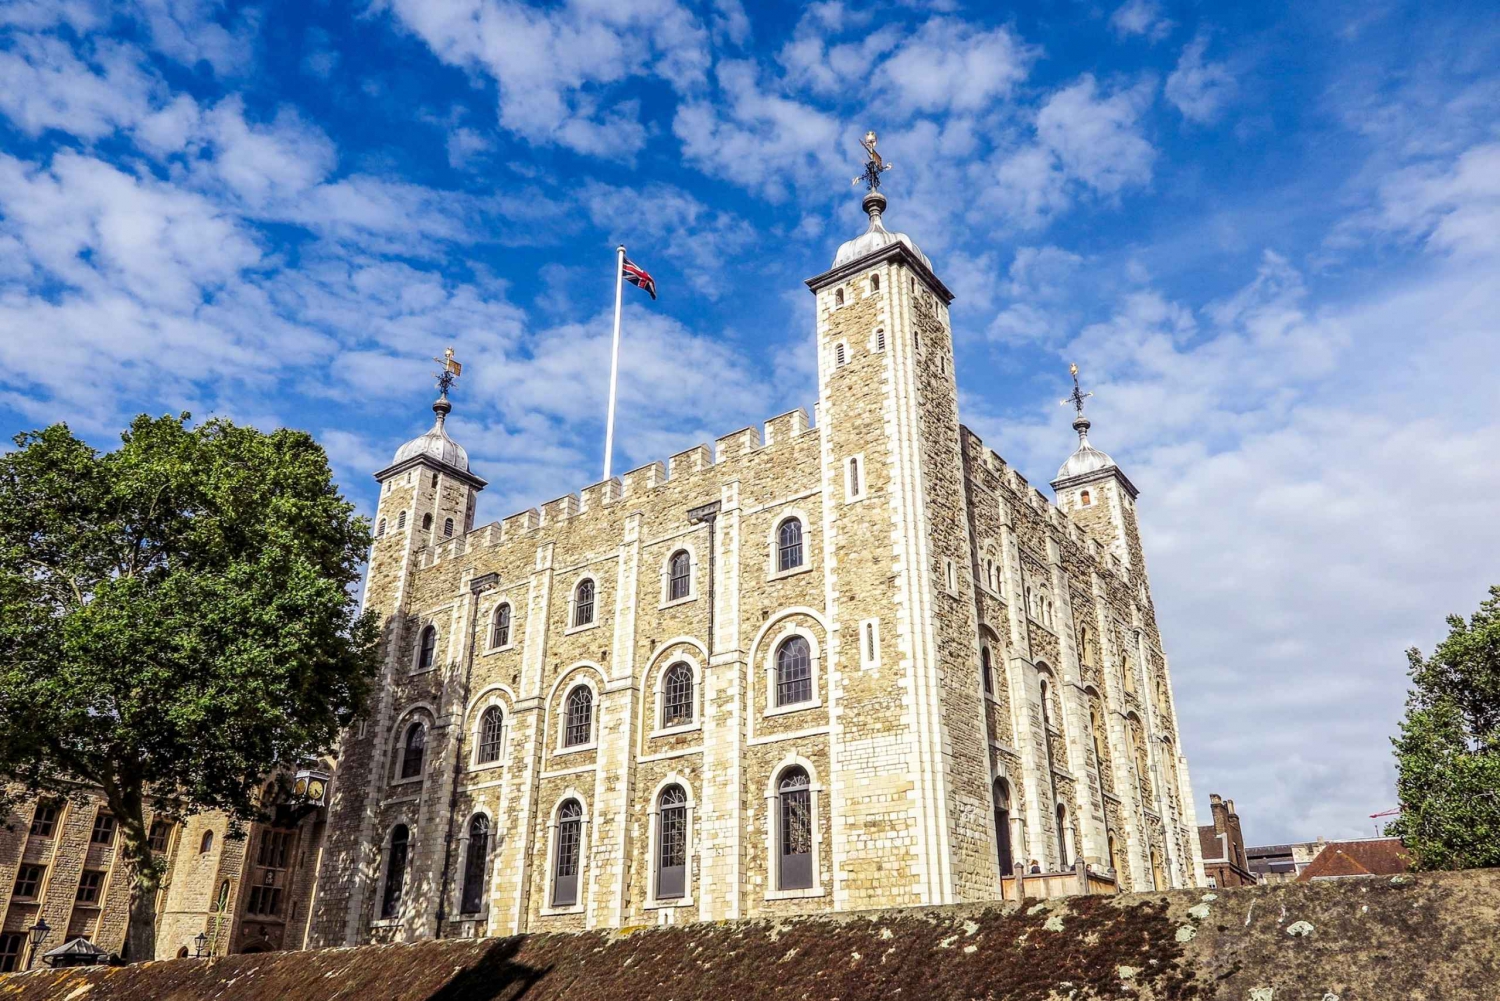 Londen: Tour met vroege toegang tot de Tower of London en de Tower Bridge